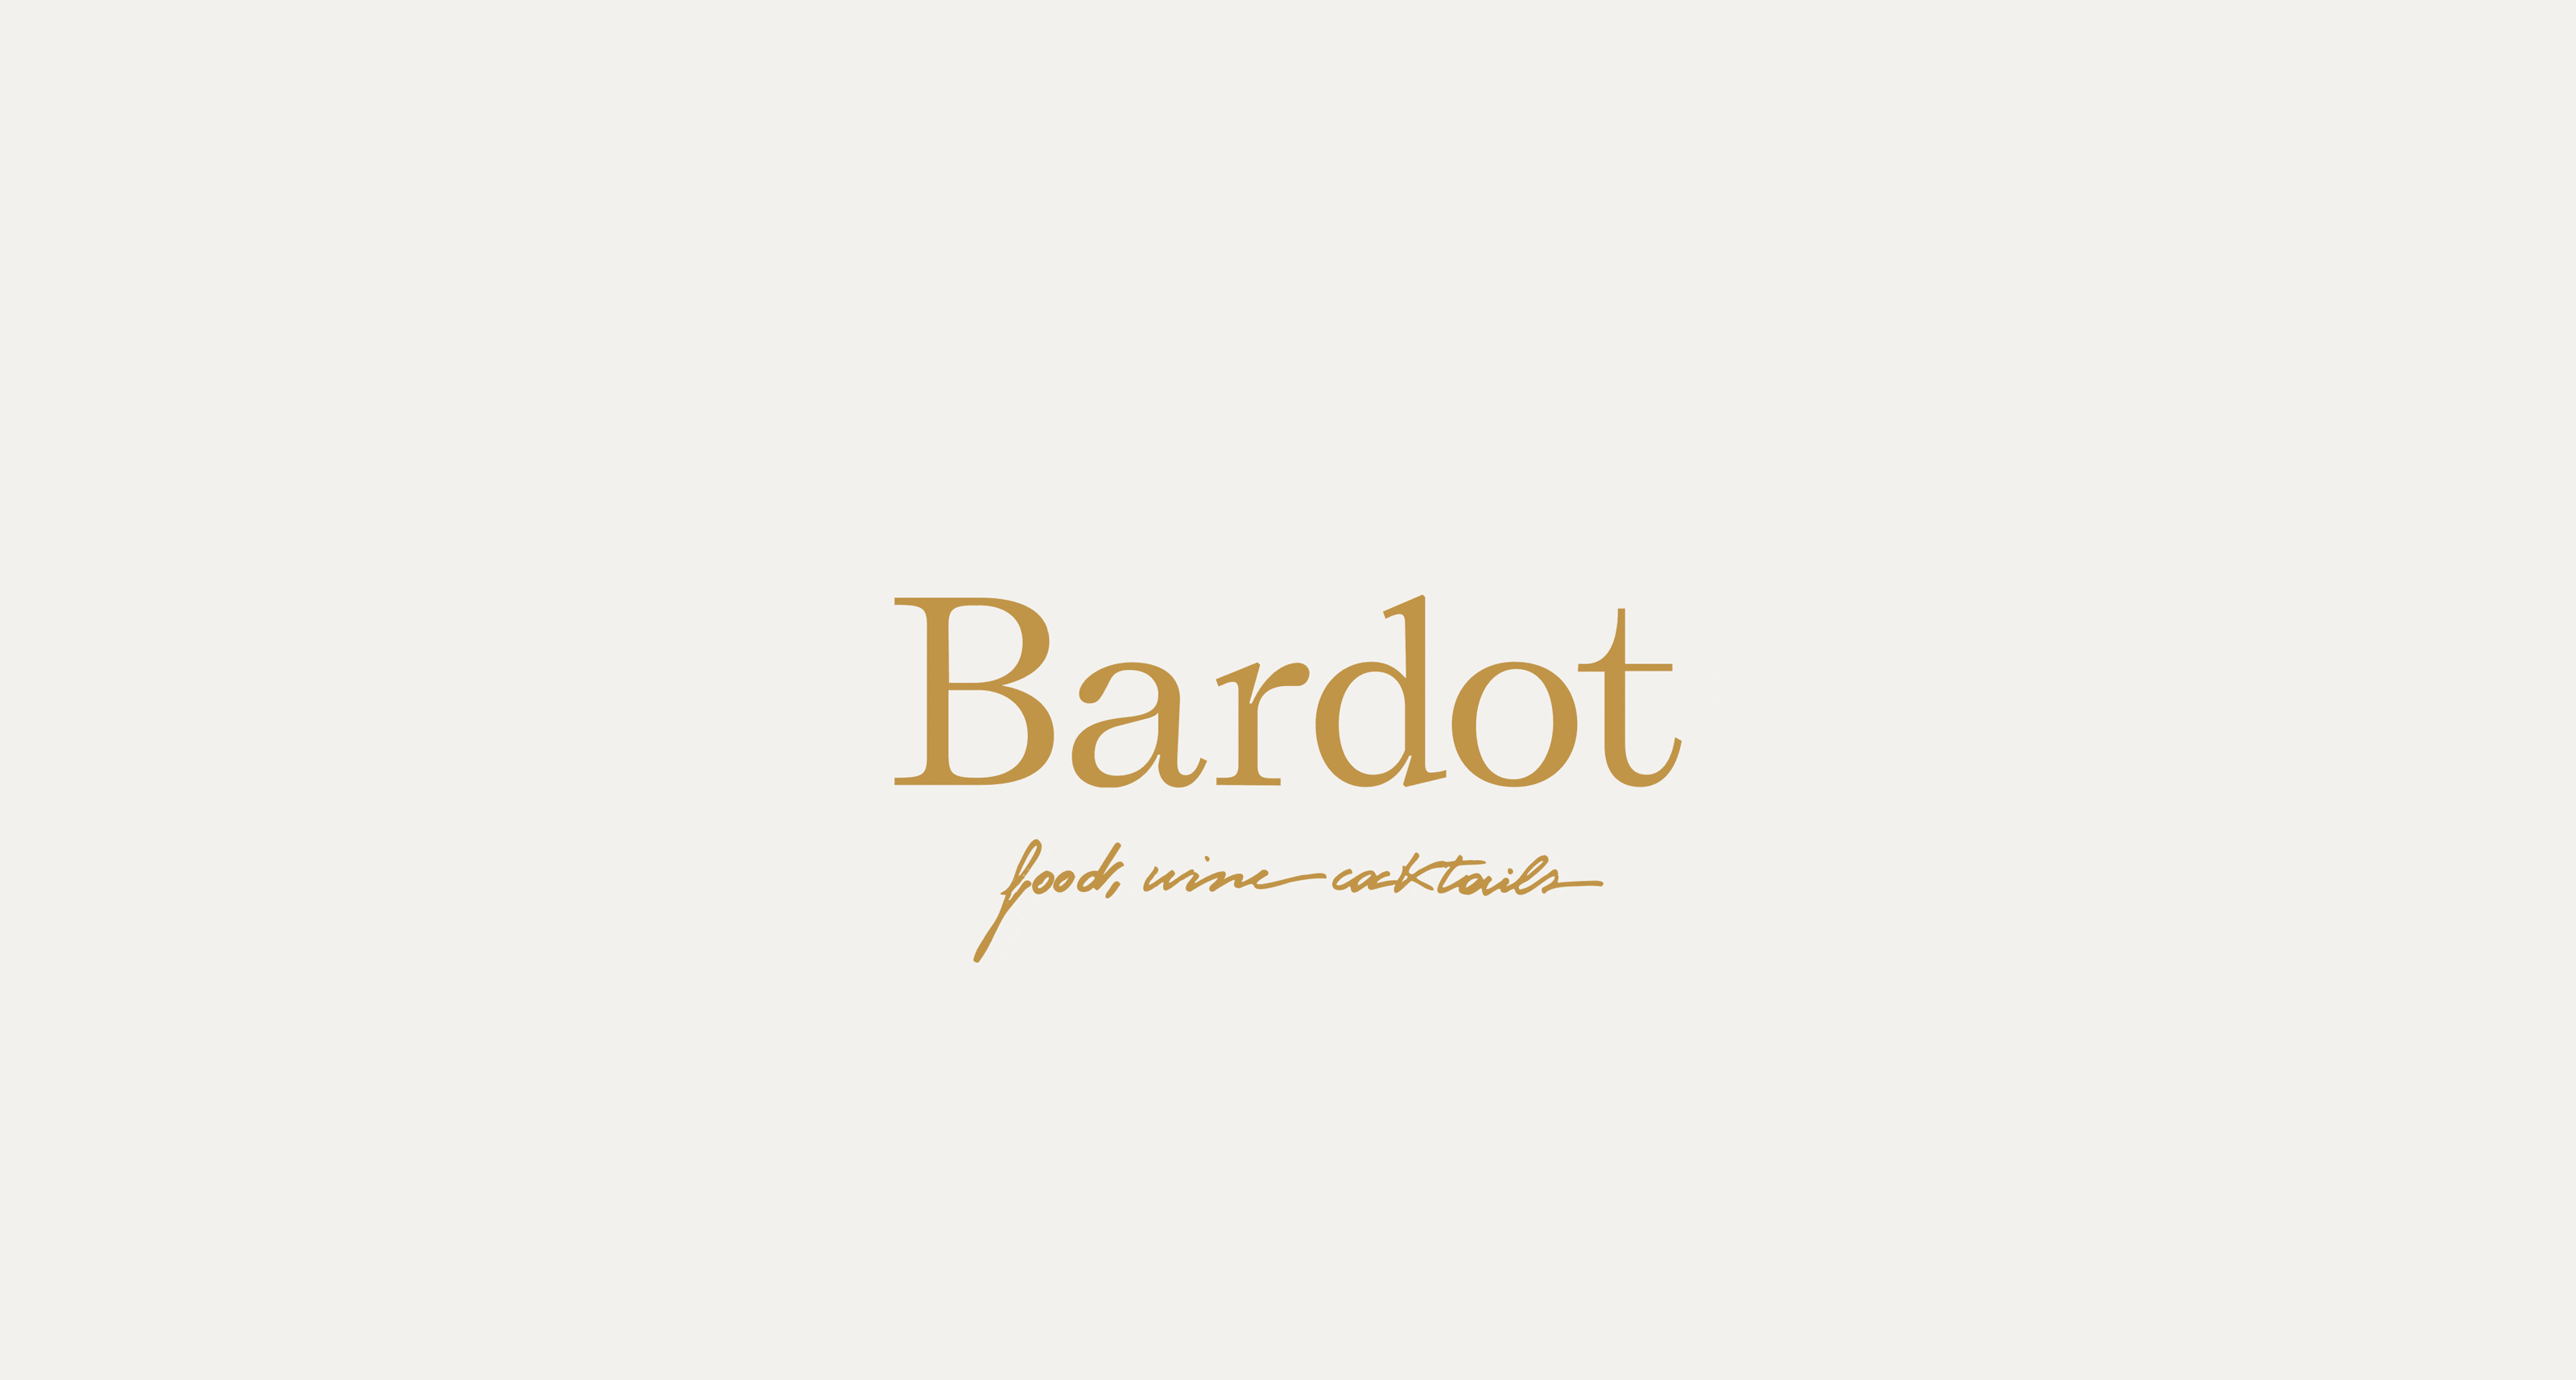 Bistro Bardot | Kallan & Co